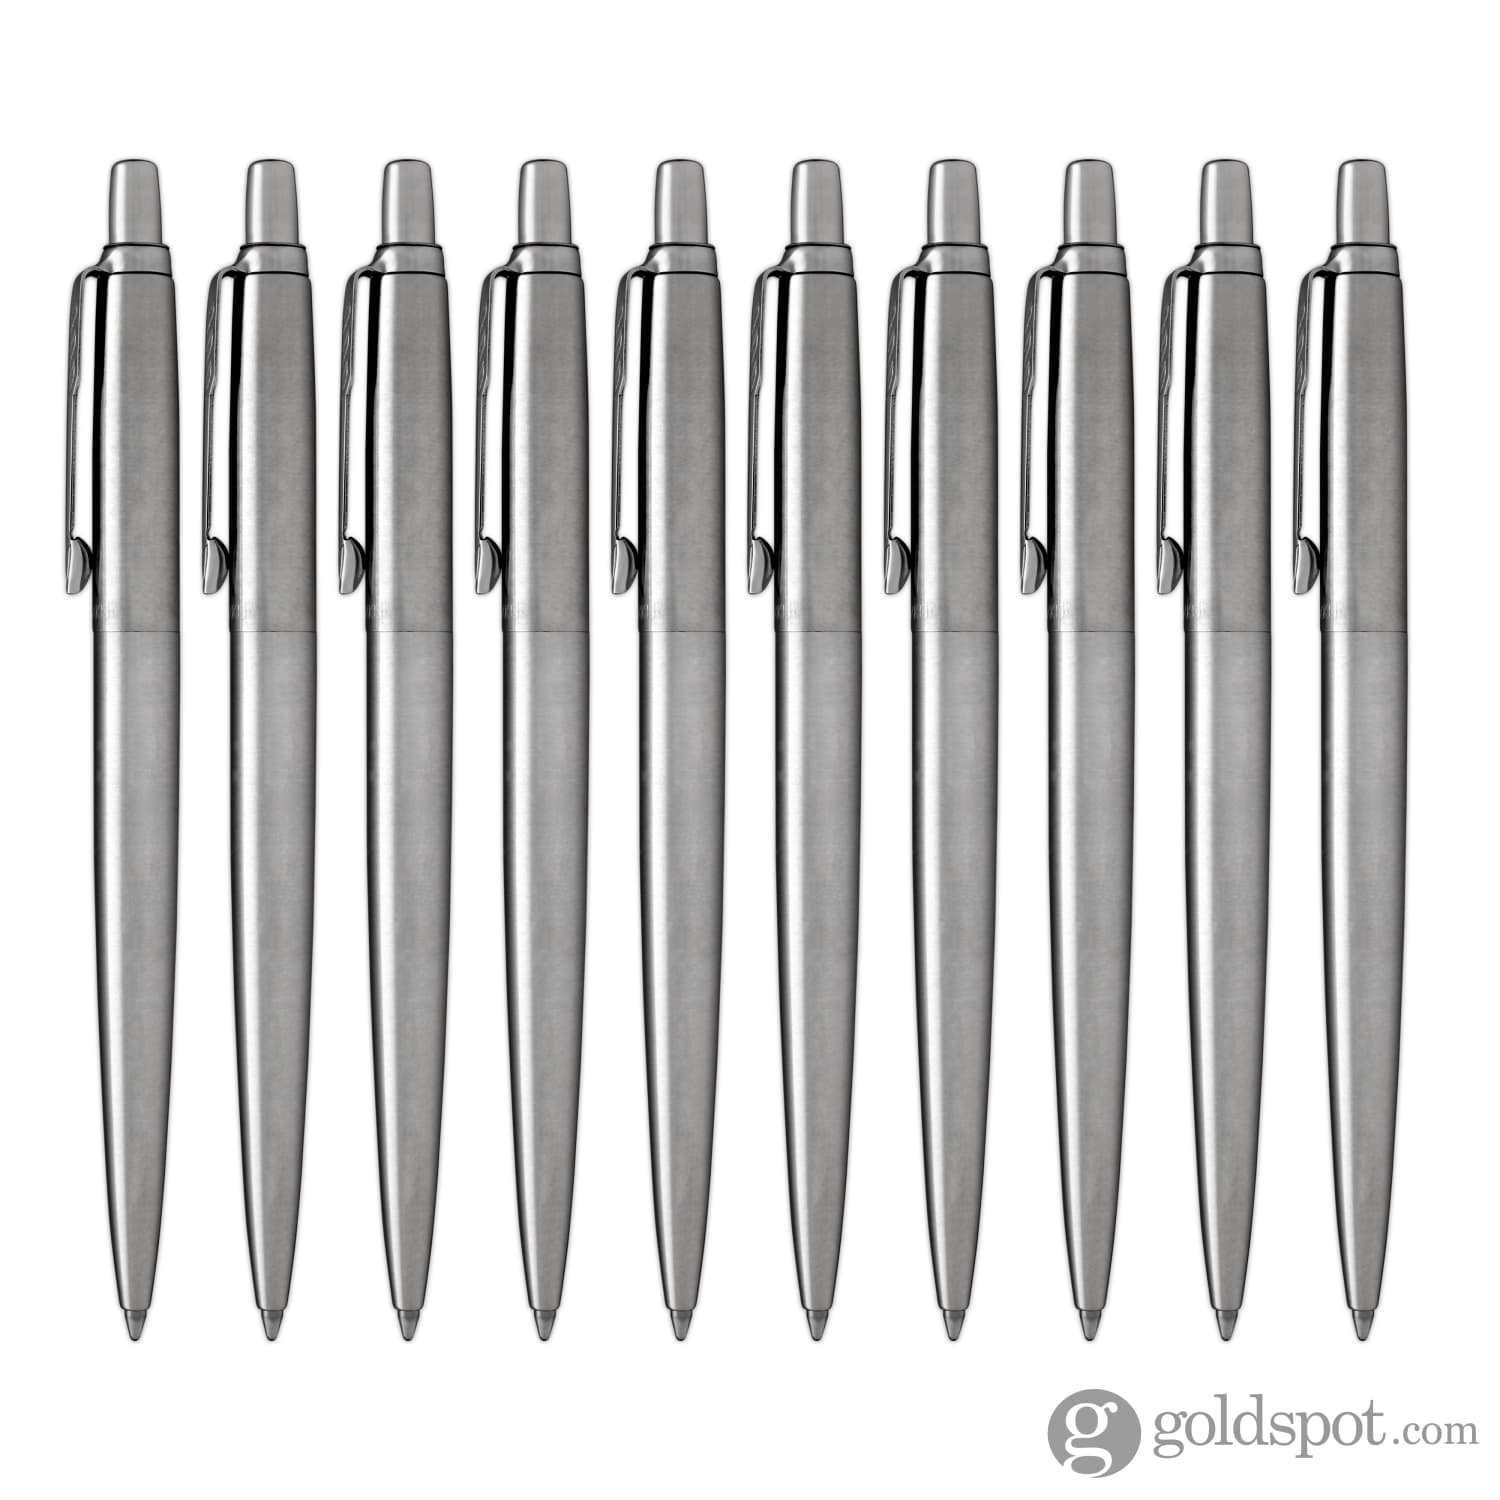 Parker Jotter Ballpoint Pen in Stainless Steel - Goldspot Pens